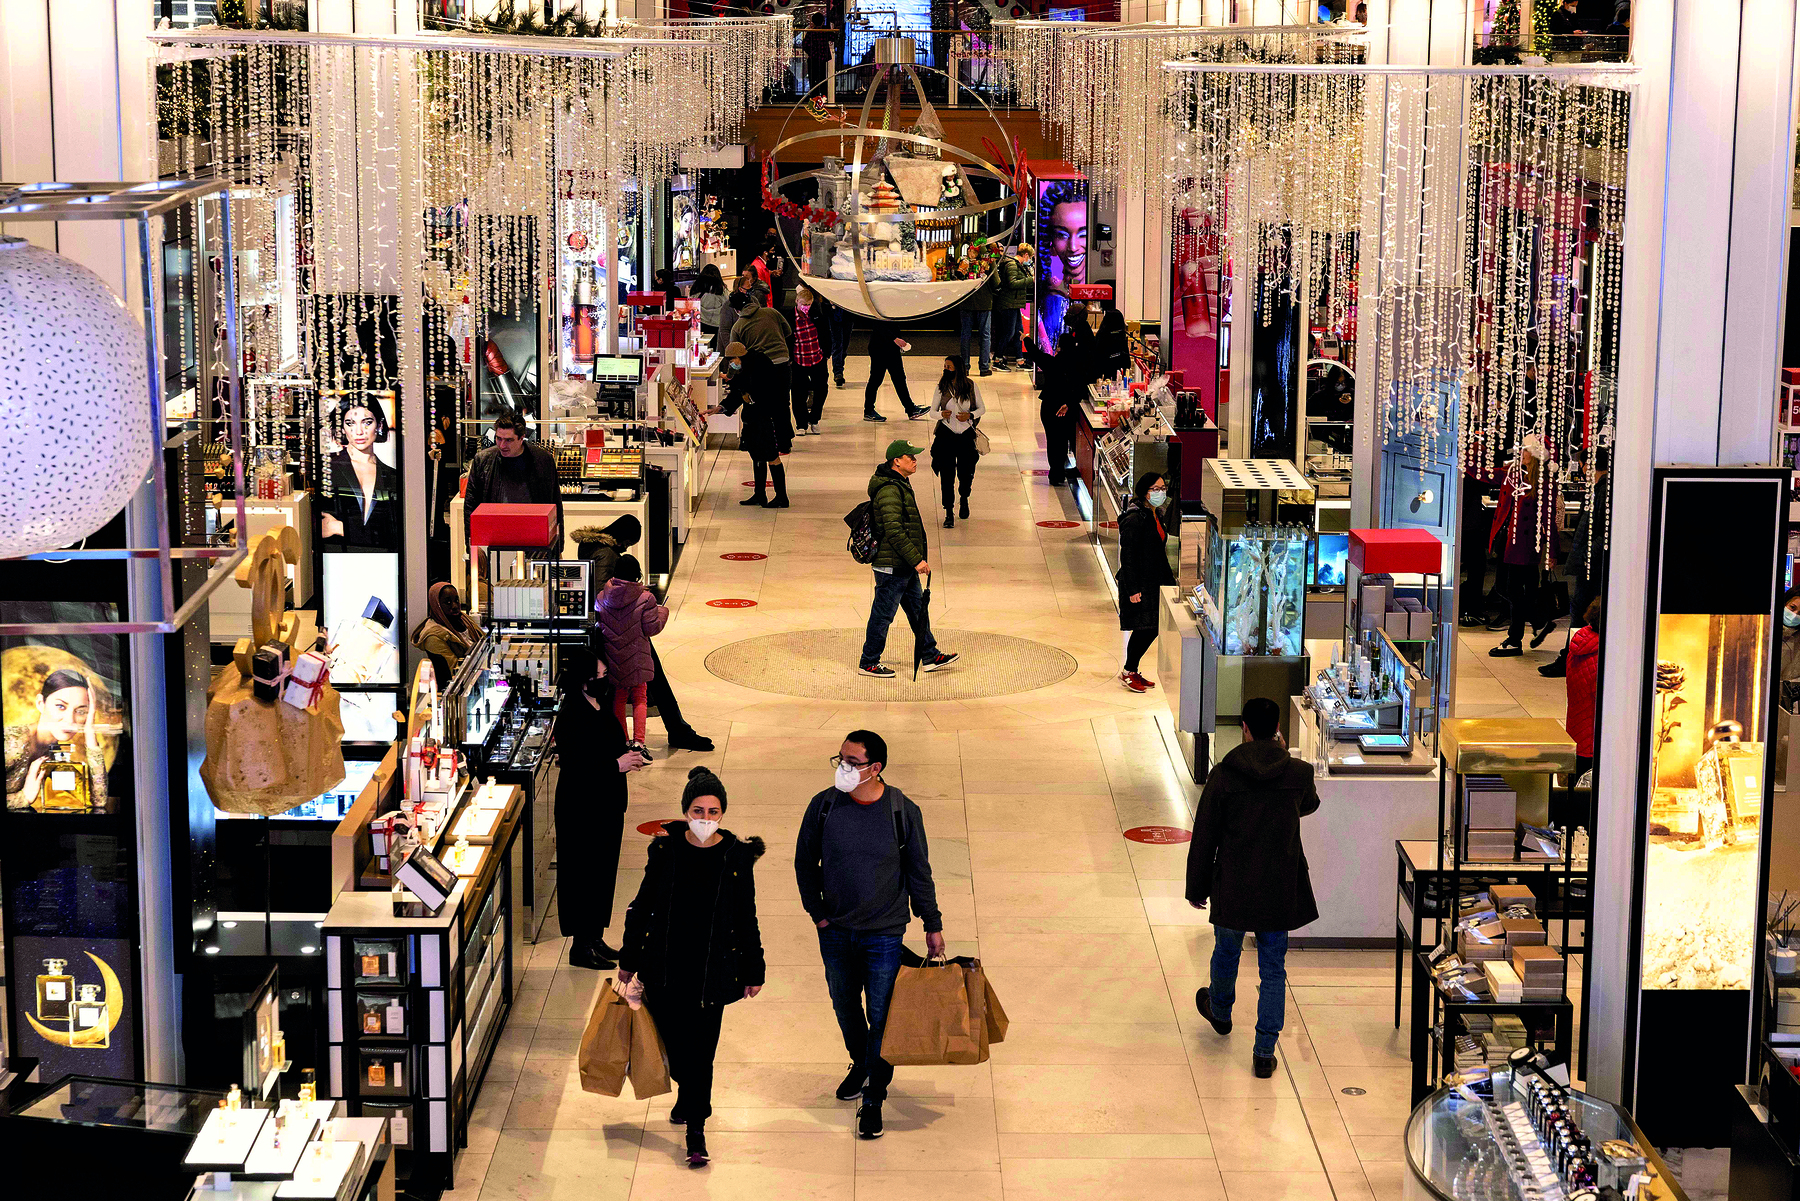 Fotografia. Vista do interior de uma loja; no centro há pessoas andando e carregando sacolas; nas laterais há diversos balcões iluminados, com produtos expostos e alguns atendentes.